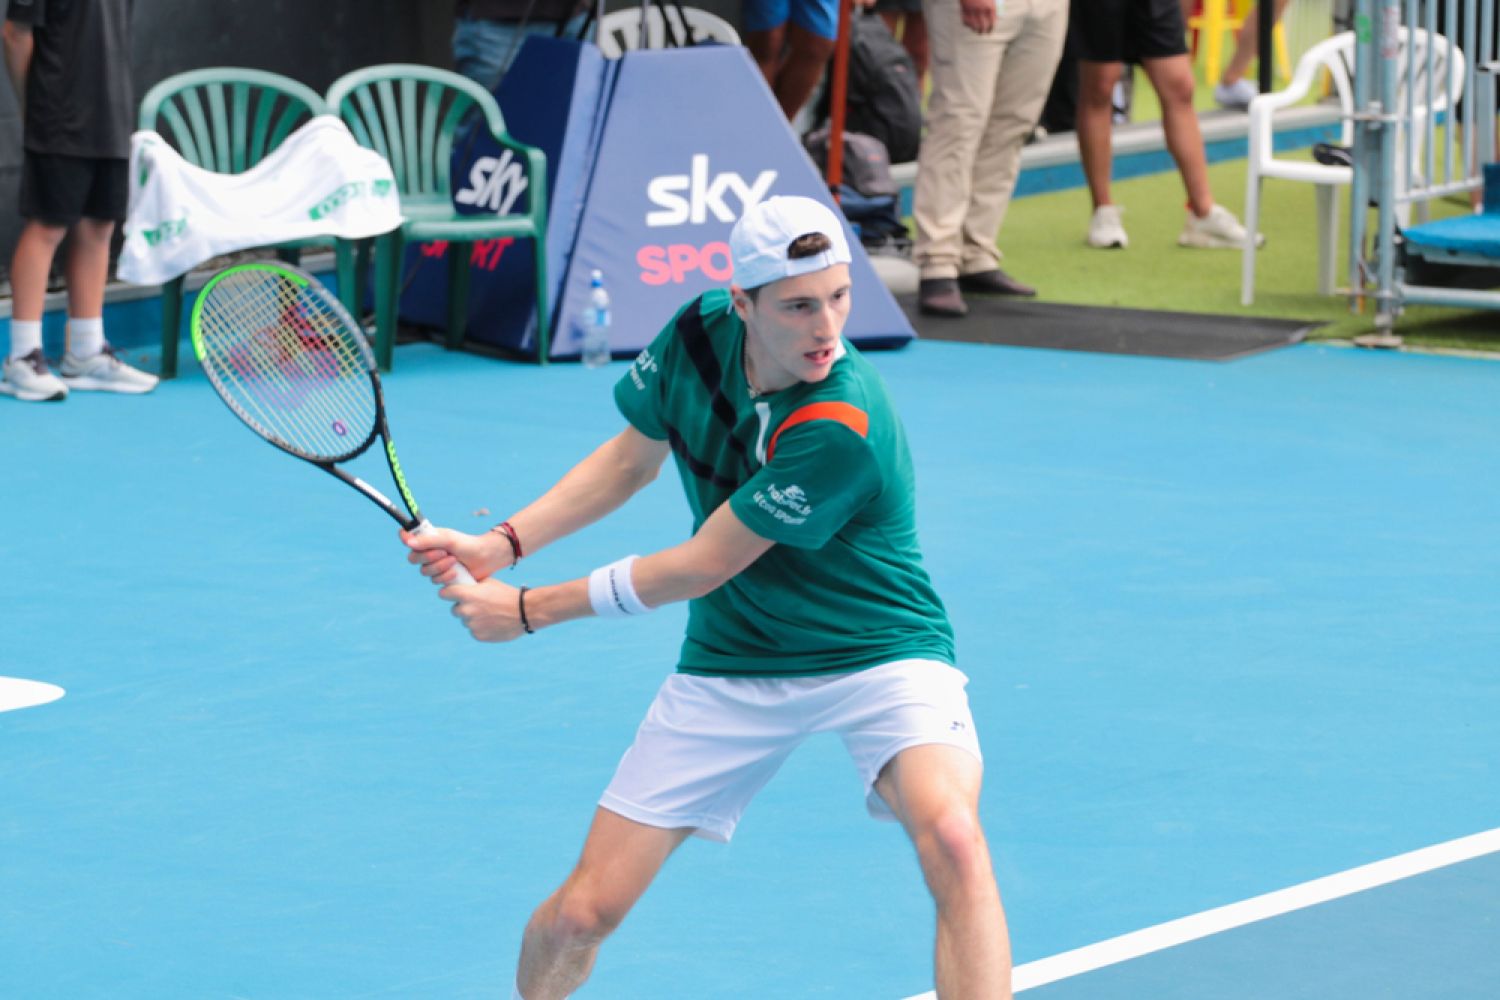 Le tennisman messin Ugo Humbert éliminé au deuxième tour de Roland-Garros